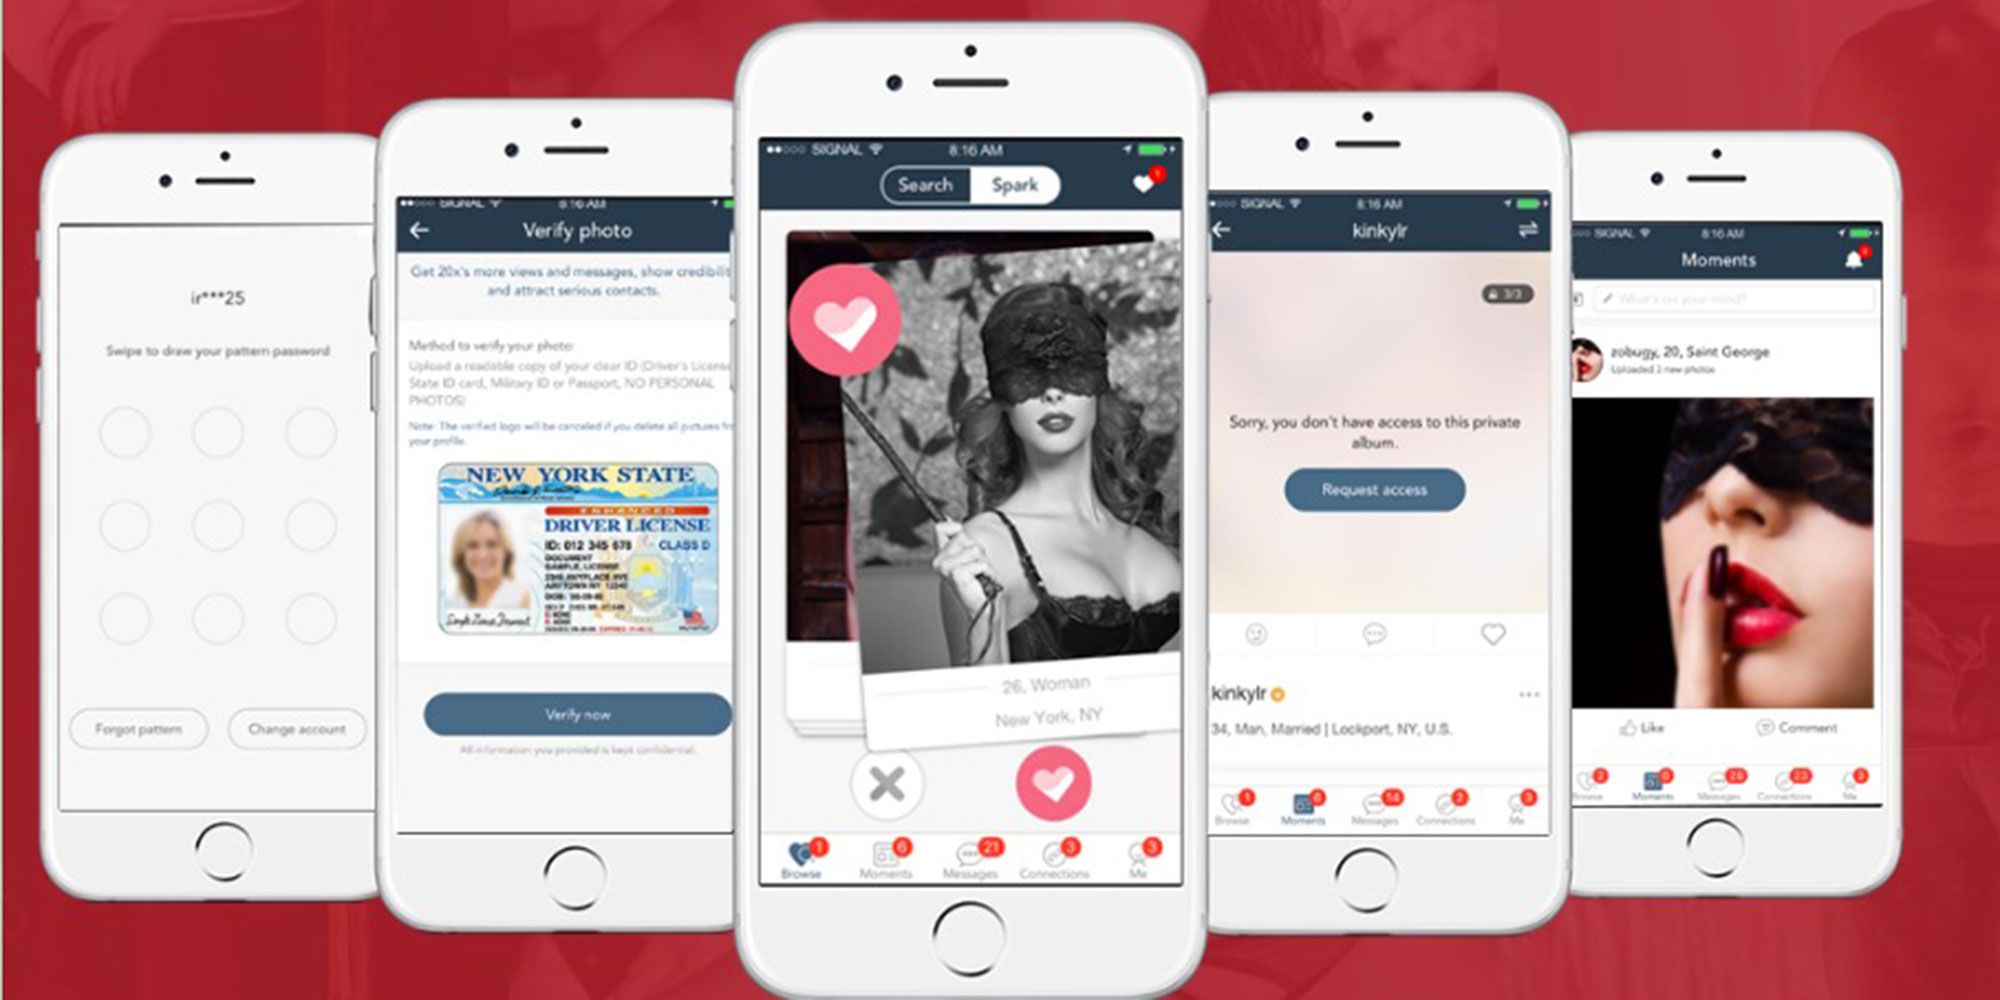 iPhone dating app NZ host een speed dating evenement